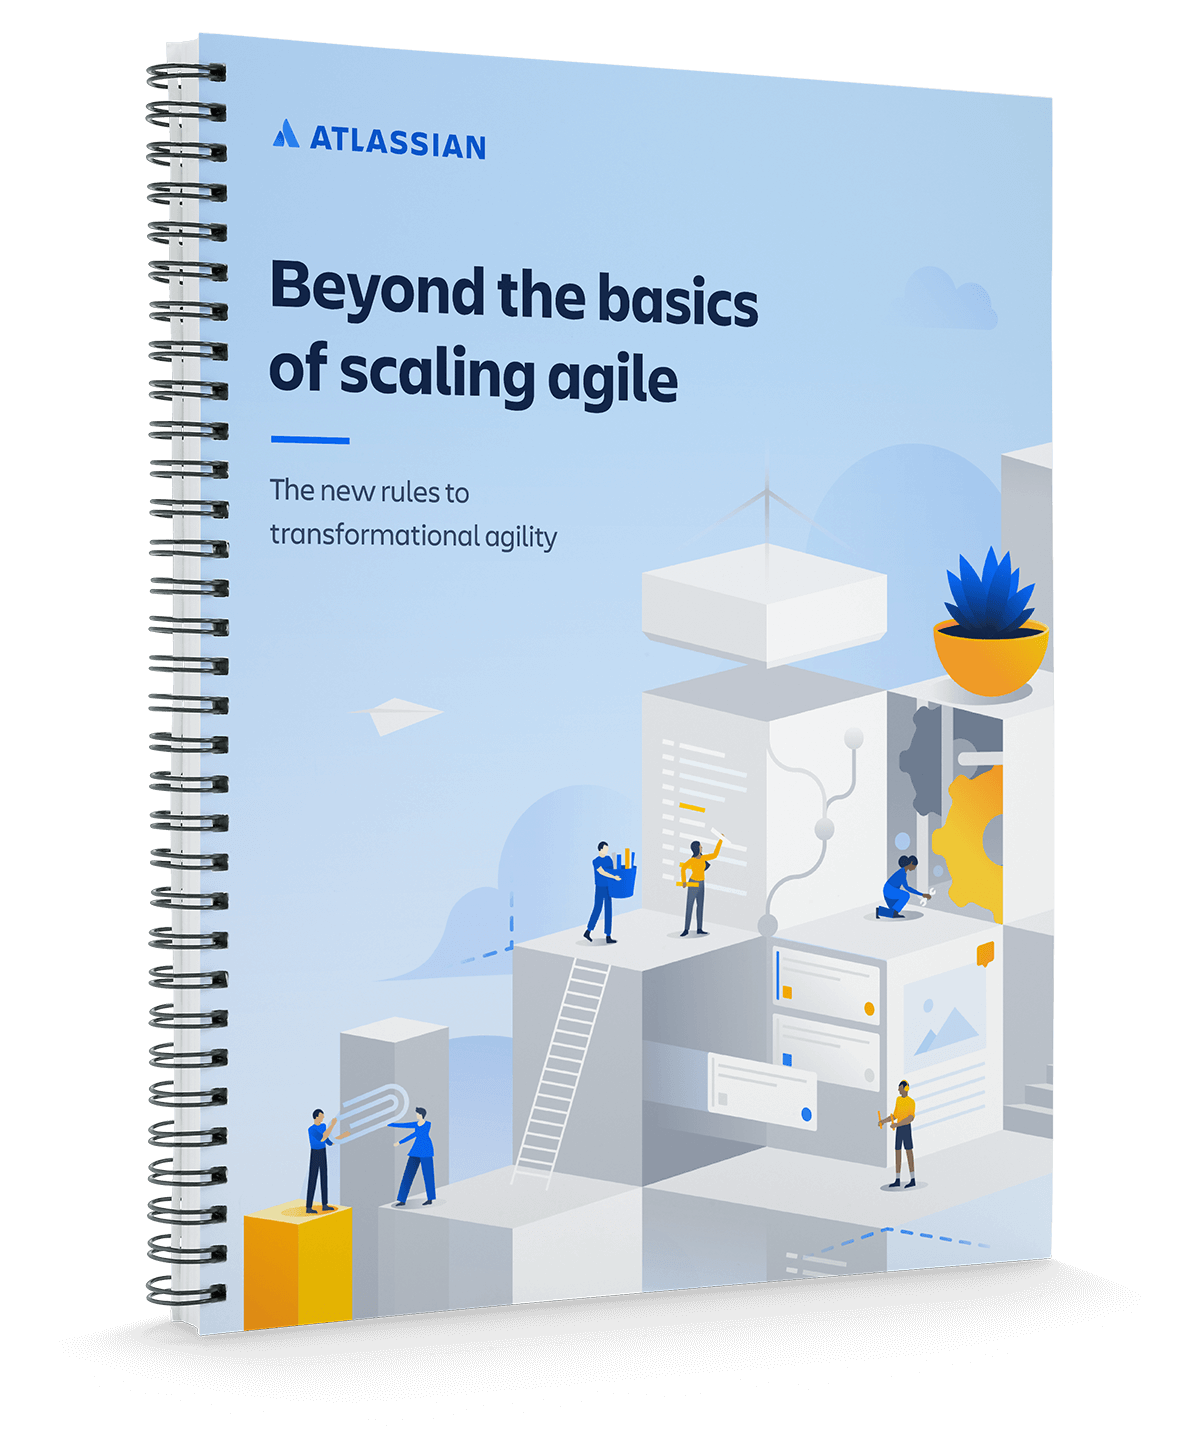 Portada de “Beyond the basics of scaling agile" (Más allá de los fundamentos básicos del escalado de la metodología ágil)